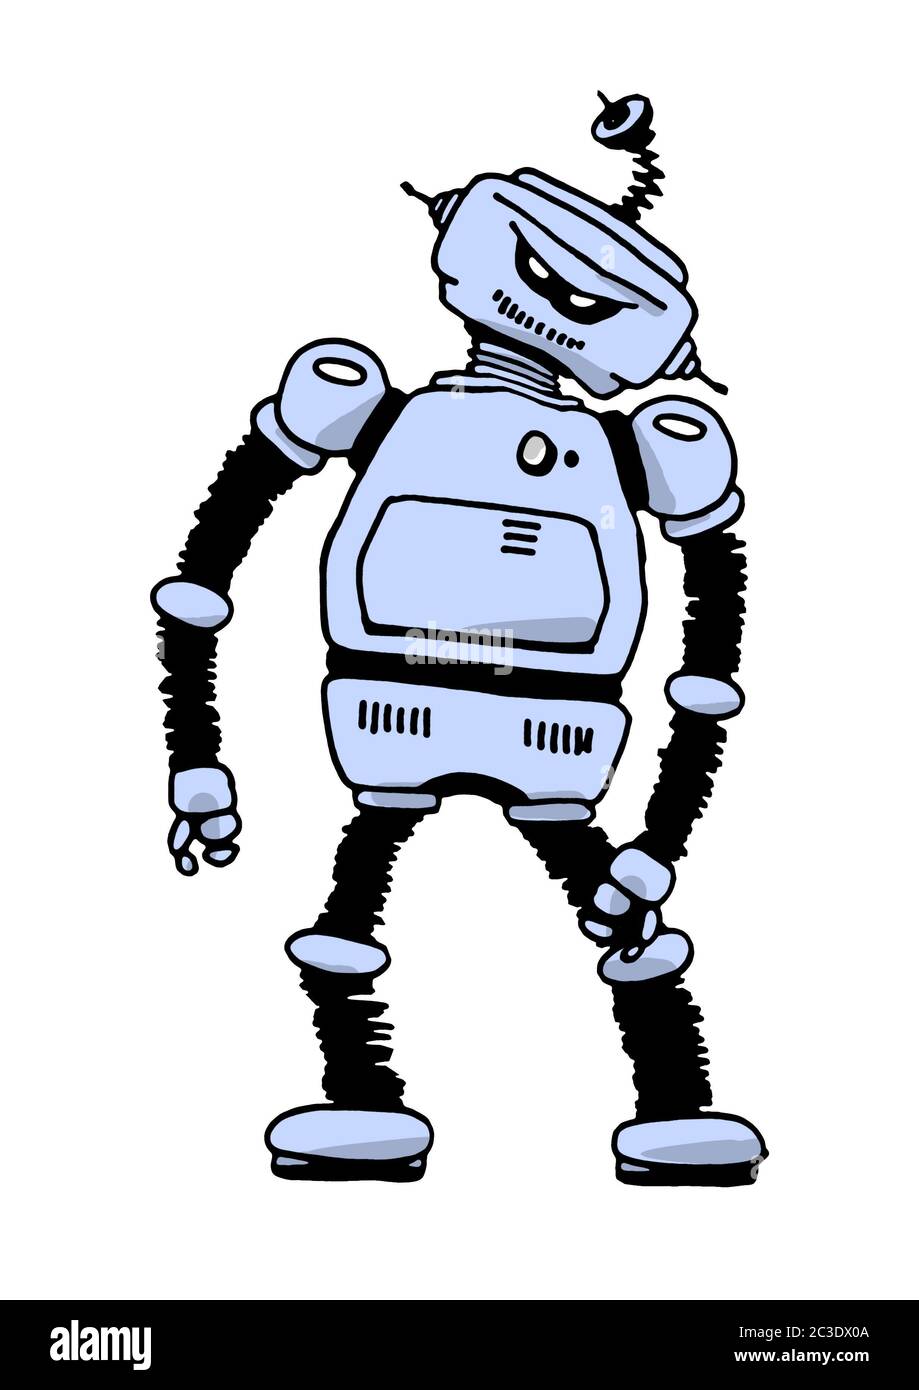 angry tin robot Stock Photo